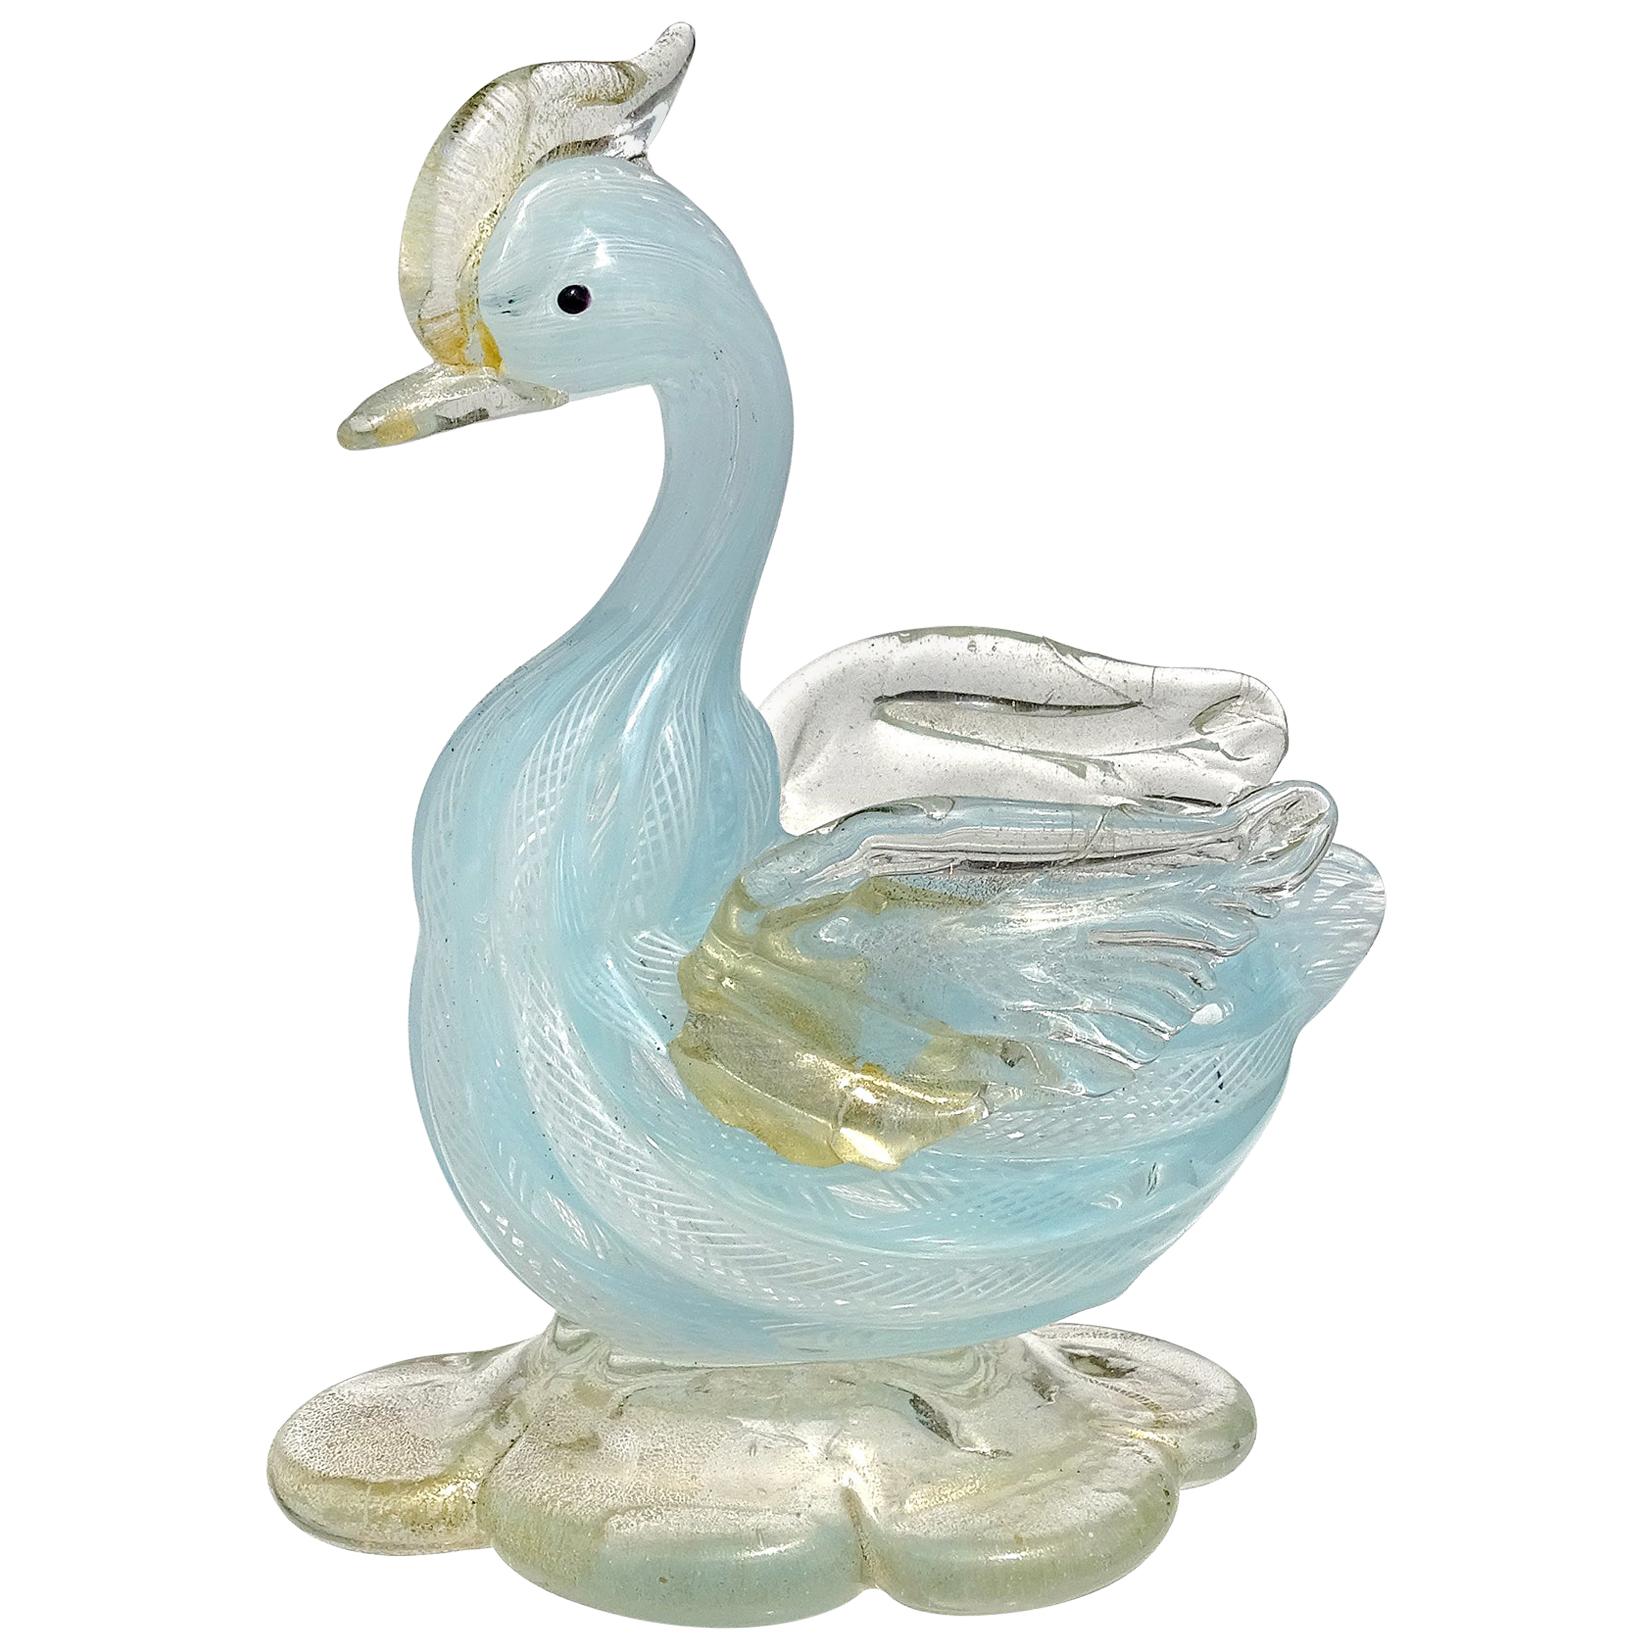 Skulptur eines Entenvogels aus italienischem Muranoglas mit blauen und weißen Goldflecken